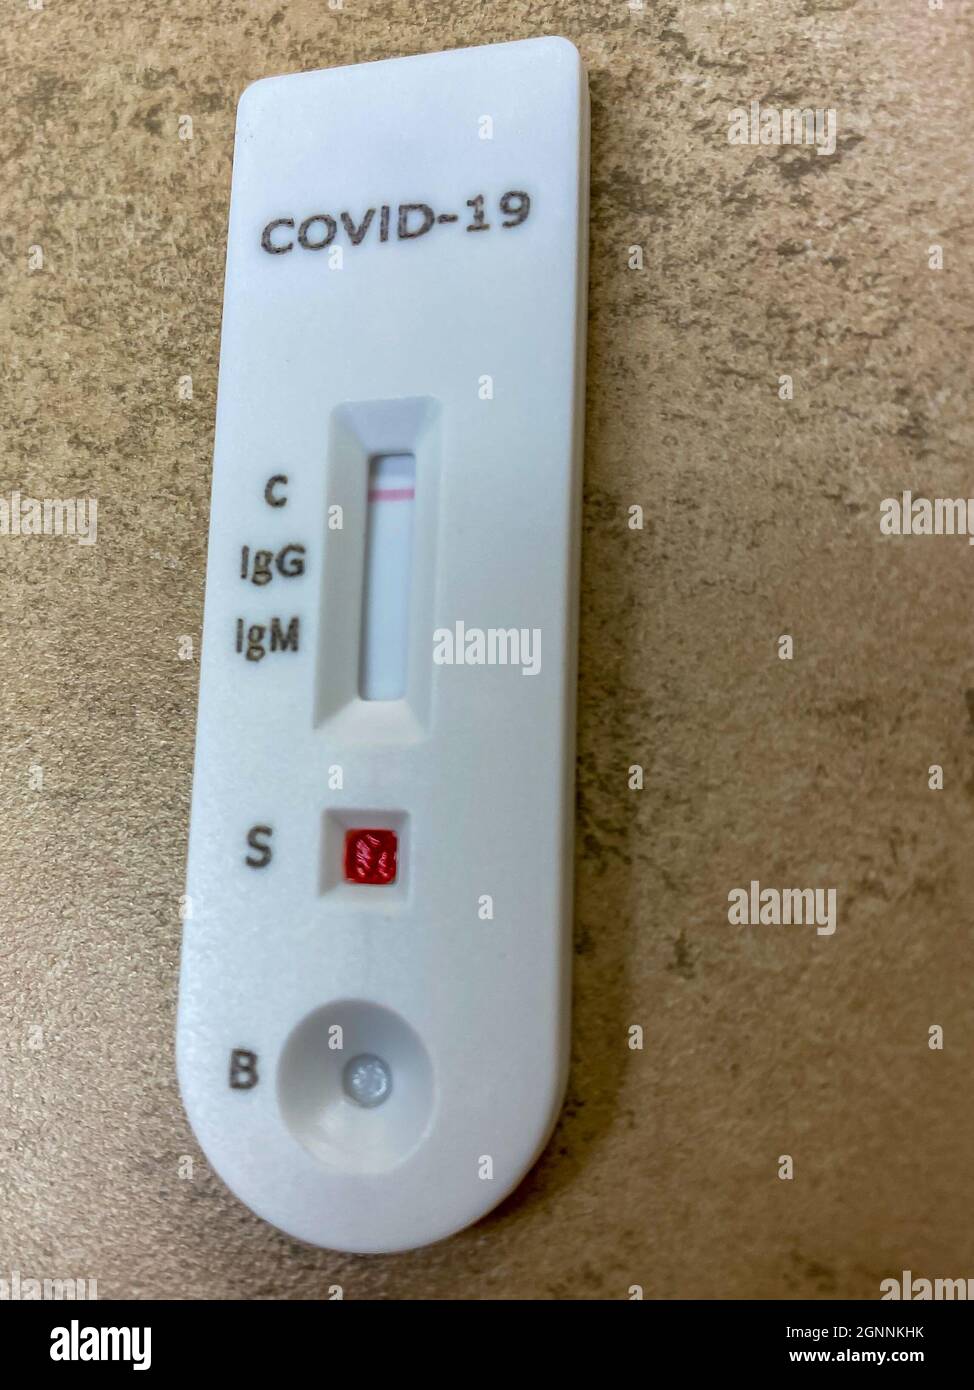 Prueba de anticuerpos COVID-19 que muestra resultados negativos para anticuerpos tanto para infección previa como para la vacuna. Foto de stock